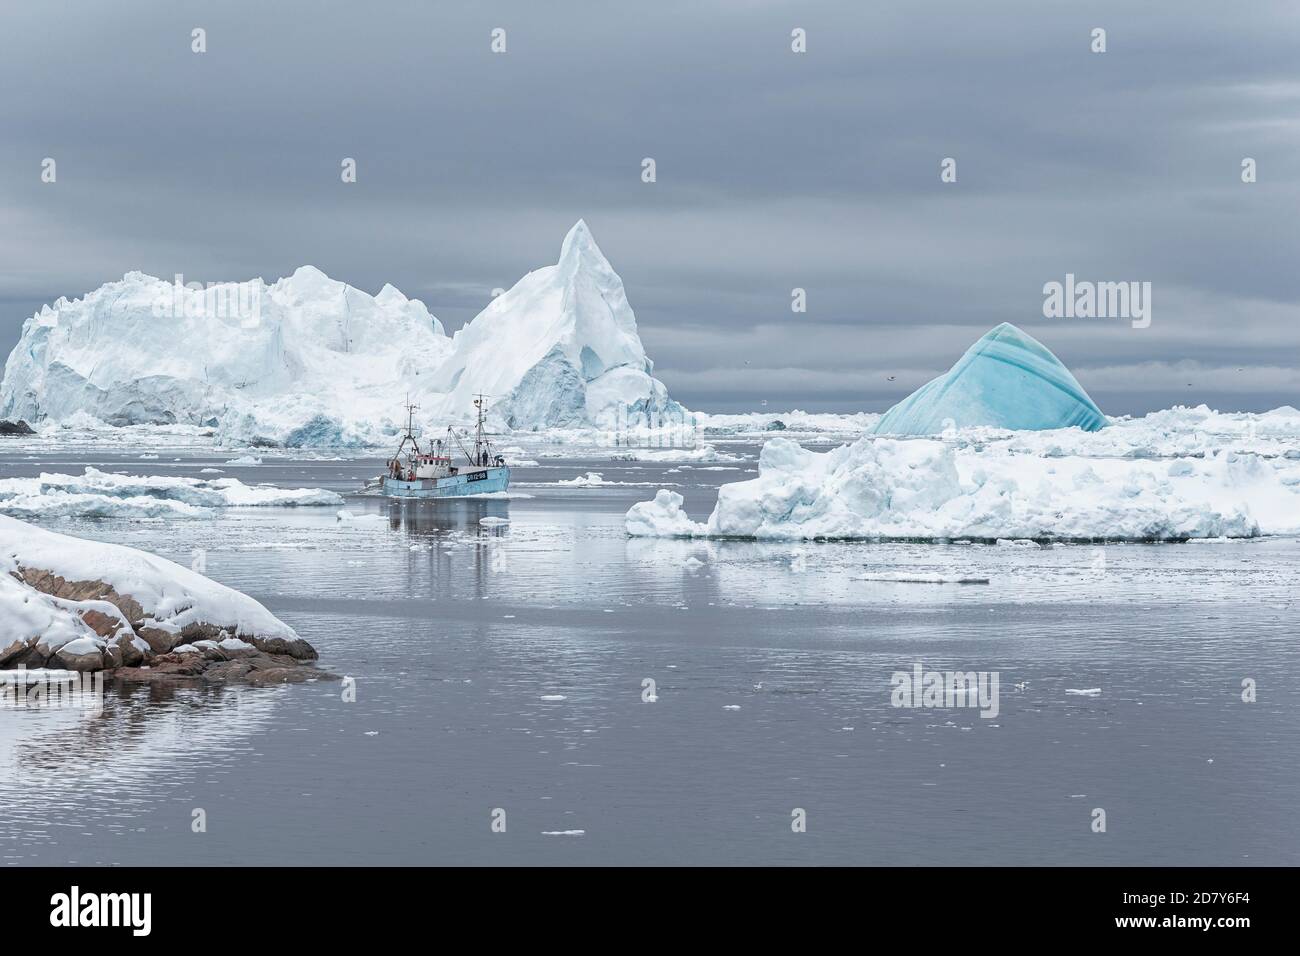 Una barca Fisher sta navigando tra gli iceberg. La barca blu circondata da iceberg. Ilulissat, Patrimonio dell'Umanità dell'UNESCO, Baia di Disko, Groenlandia. - Foto Stock